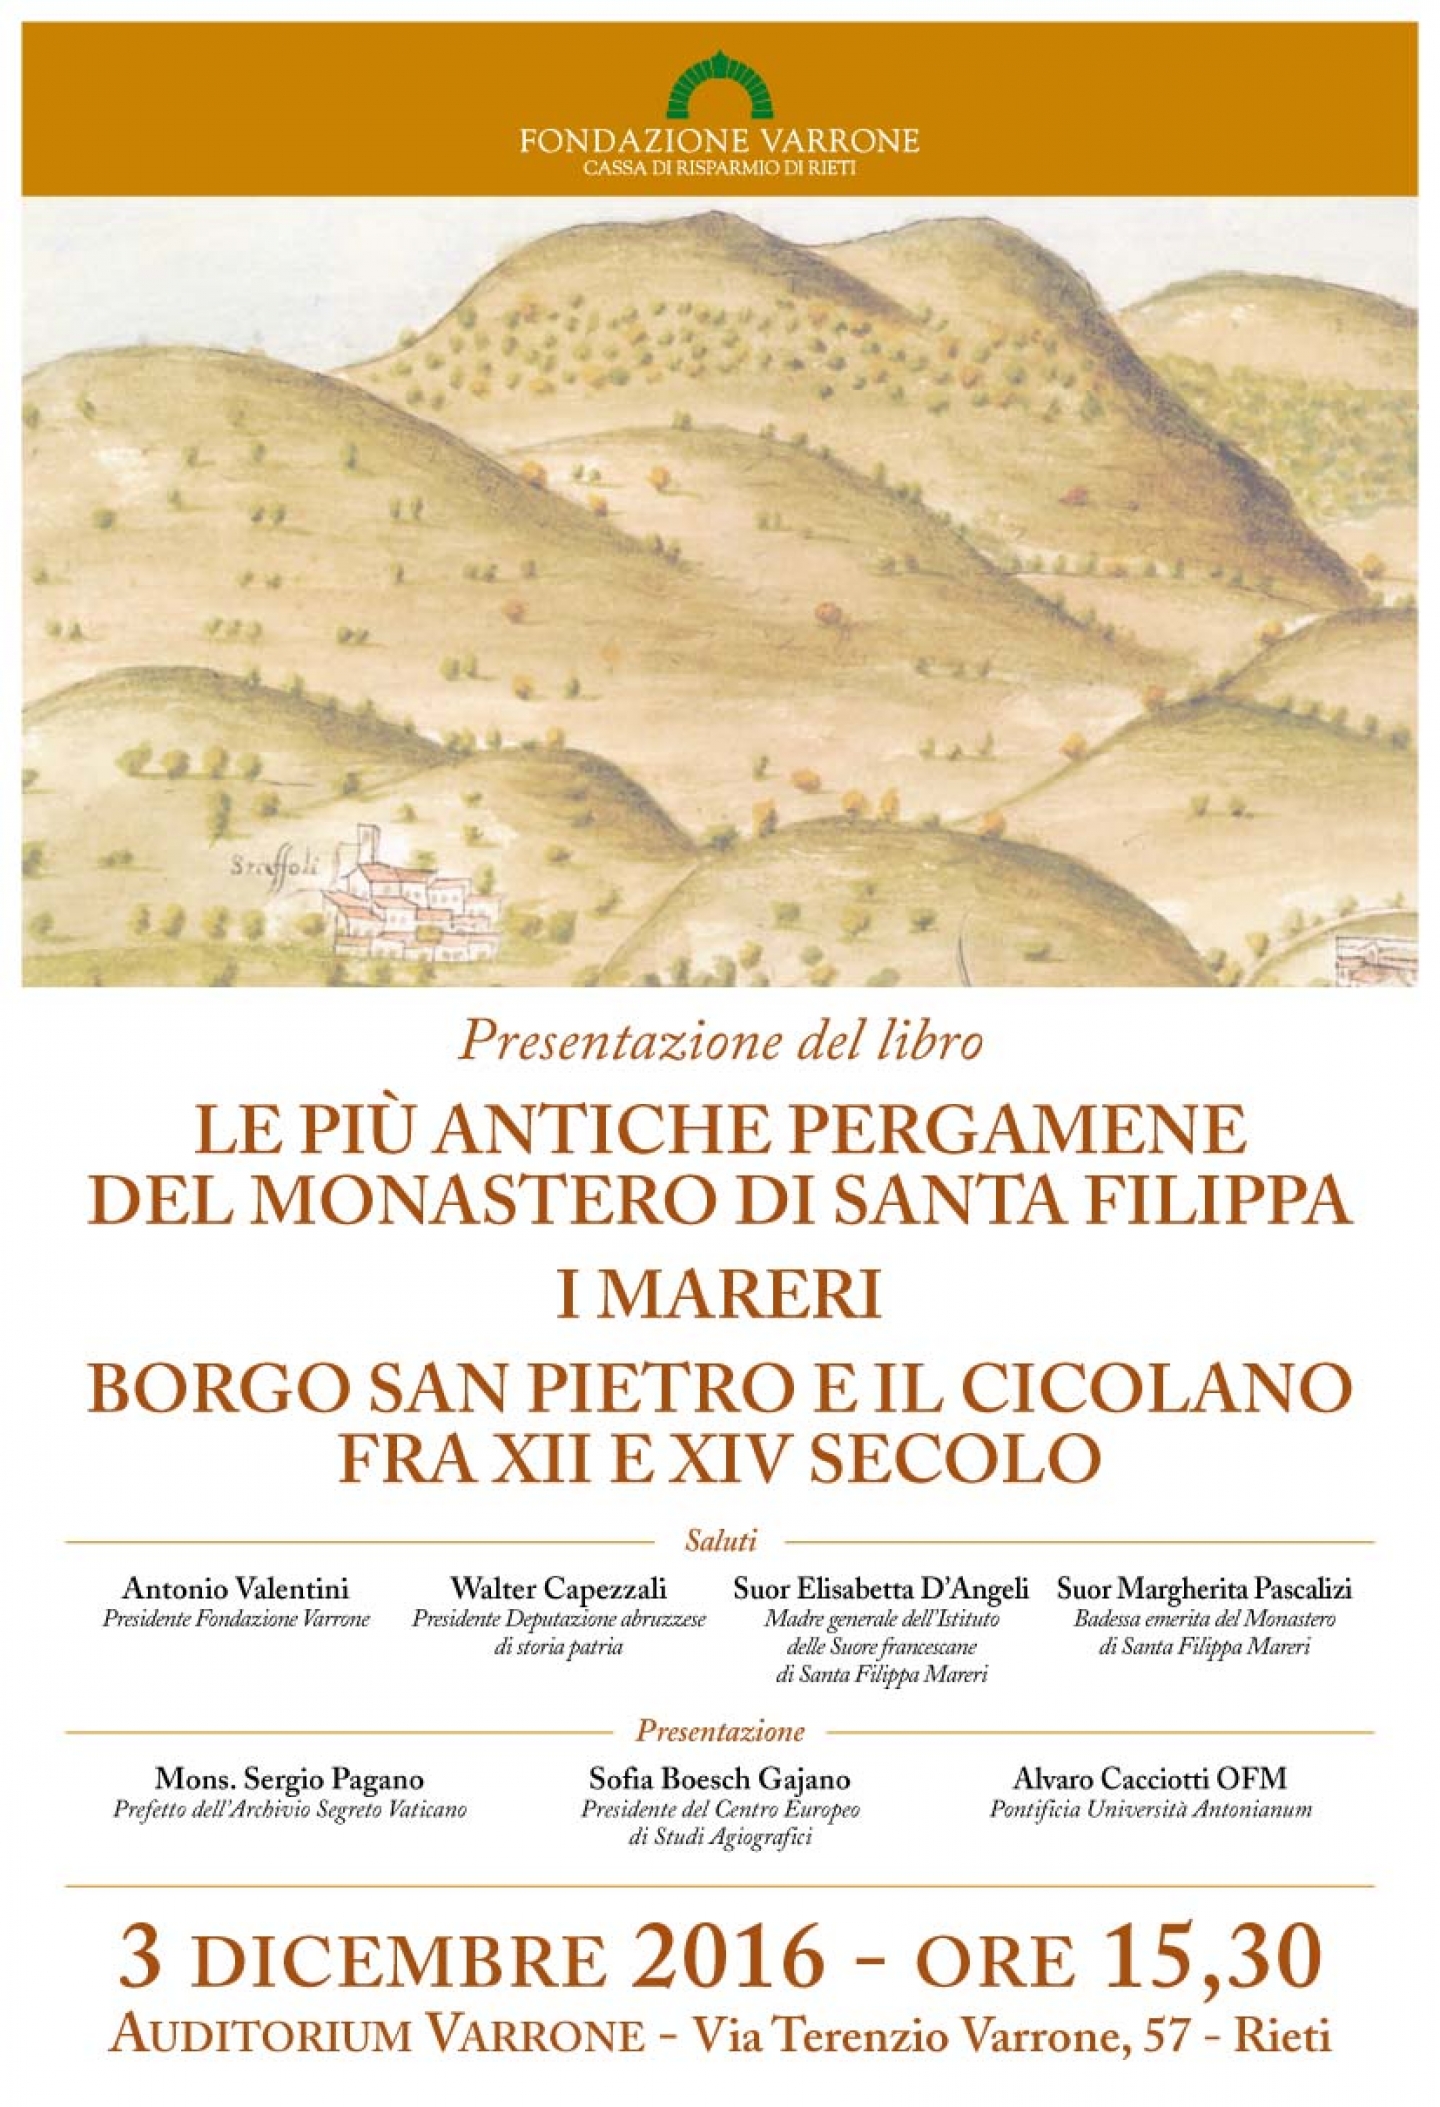 Presentazione del libro "Le più antiche pergamene del Monastero di Santa Filippa"